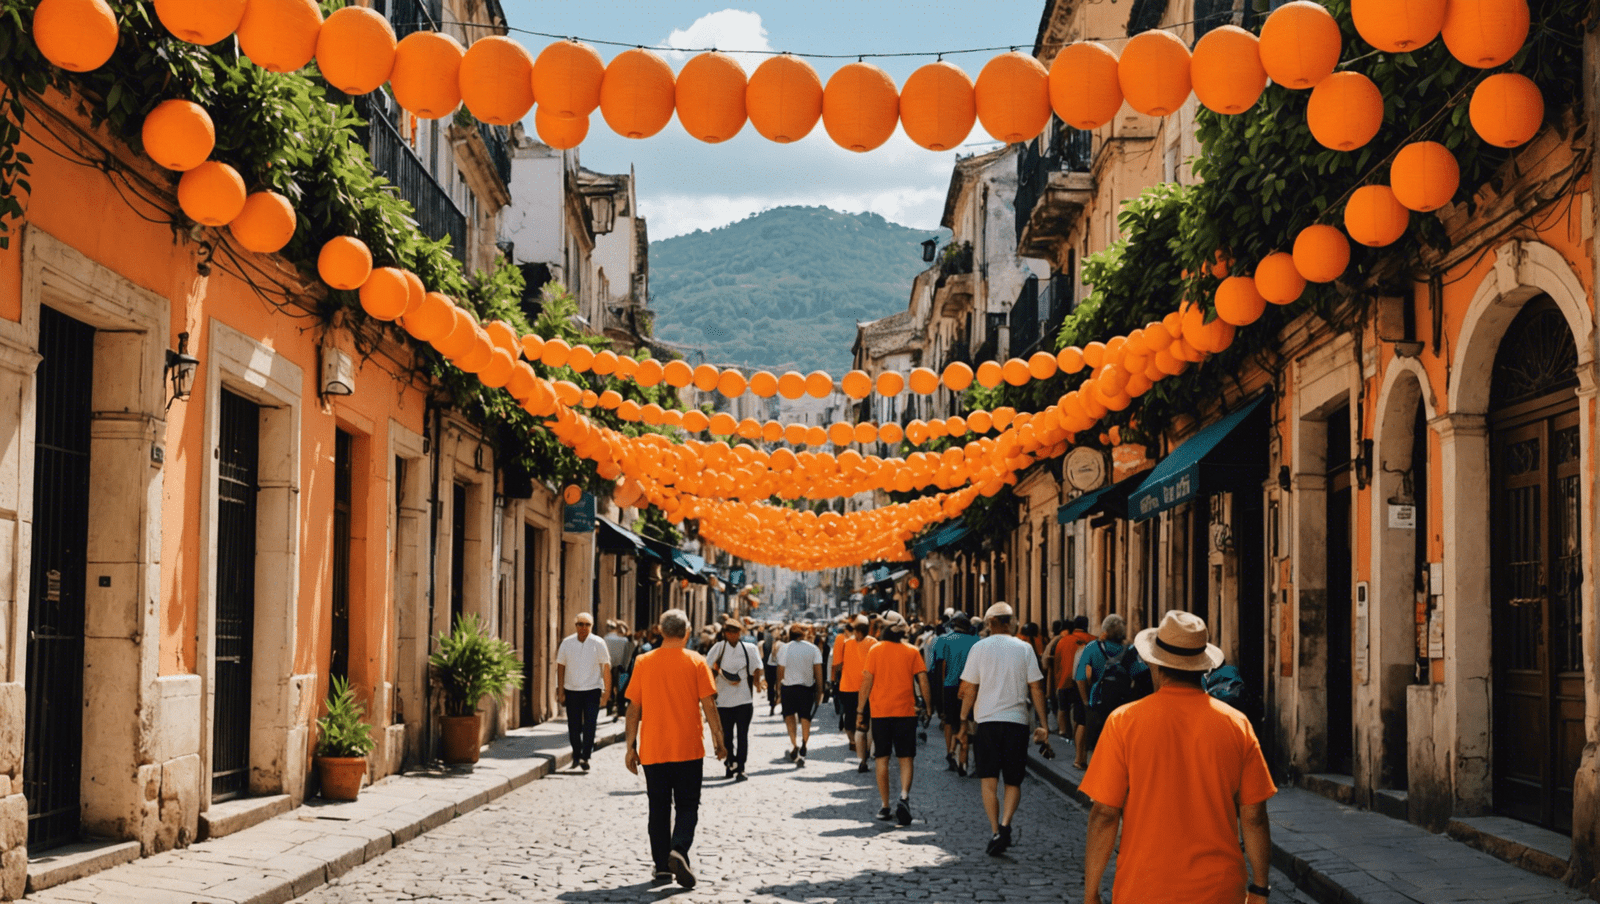 découvrez les merveilles de la promenade orange grâce à ce guide de voyage, une destination pittoresque à explorer sans plus attendre.